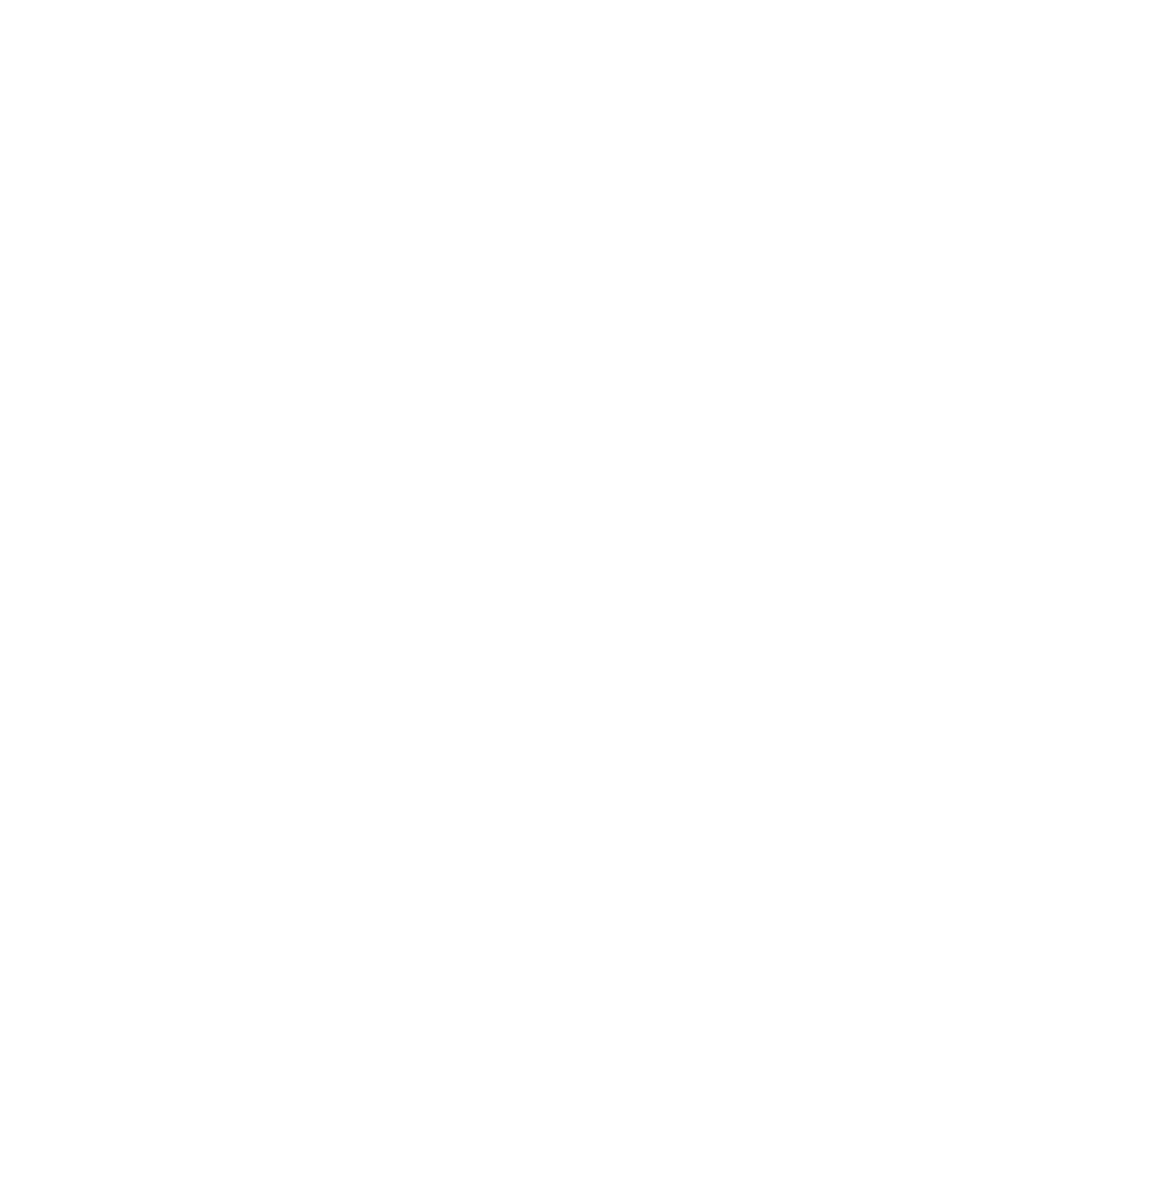 ADRA Deutschland e.V. vertikal Logo in weiß